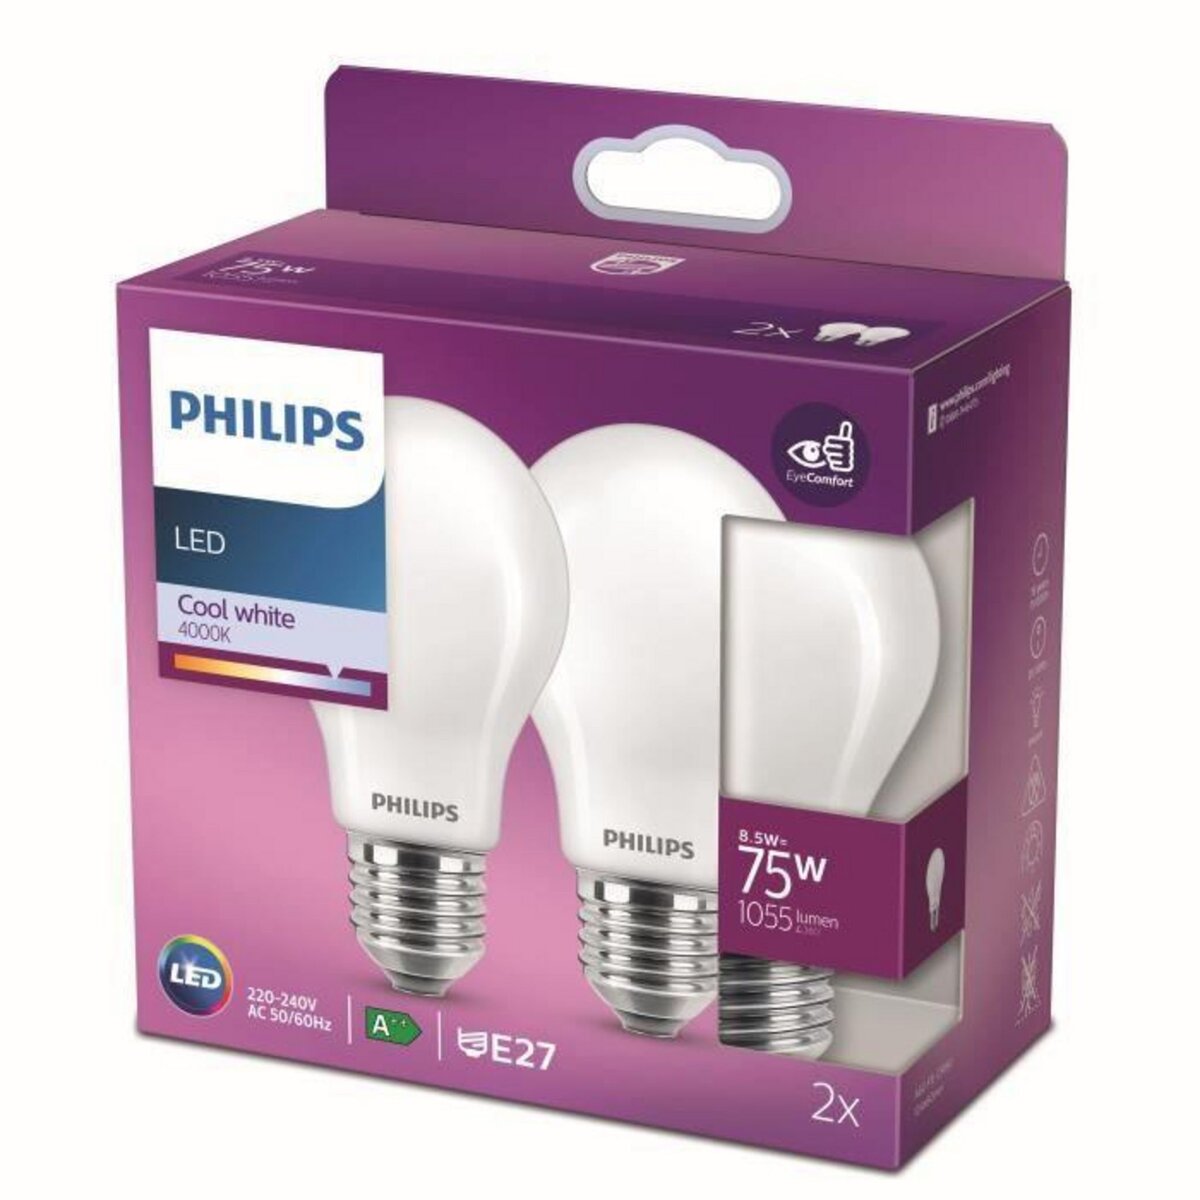 Philips ampoule LED Equivalent 75W E27 Blanc froid non dimmable, verre, lot  de 2 pas cher 